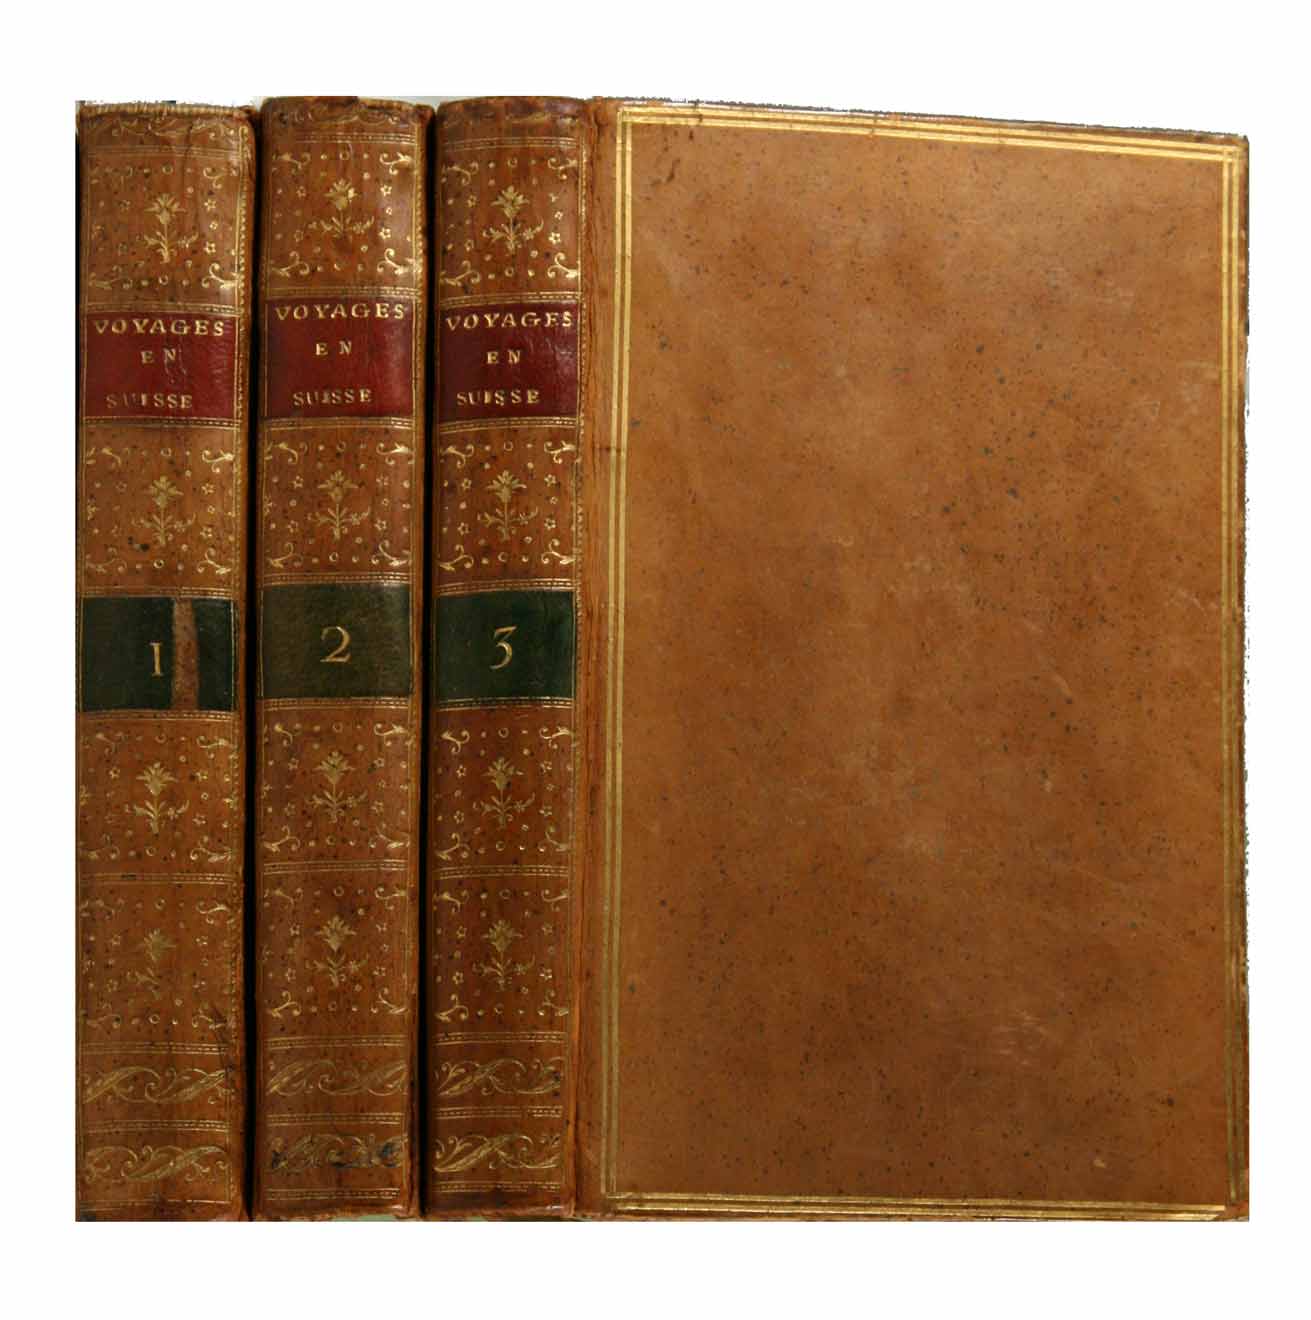 COXE, William (1747-1828): - Voyage en Suisse par M. William Coxe. Traduit de l'anglois (par T. Mandar). En 3 volumes.